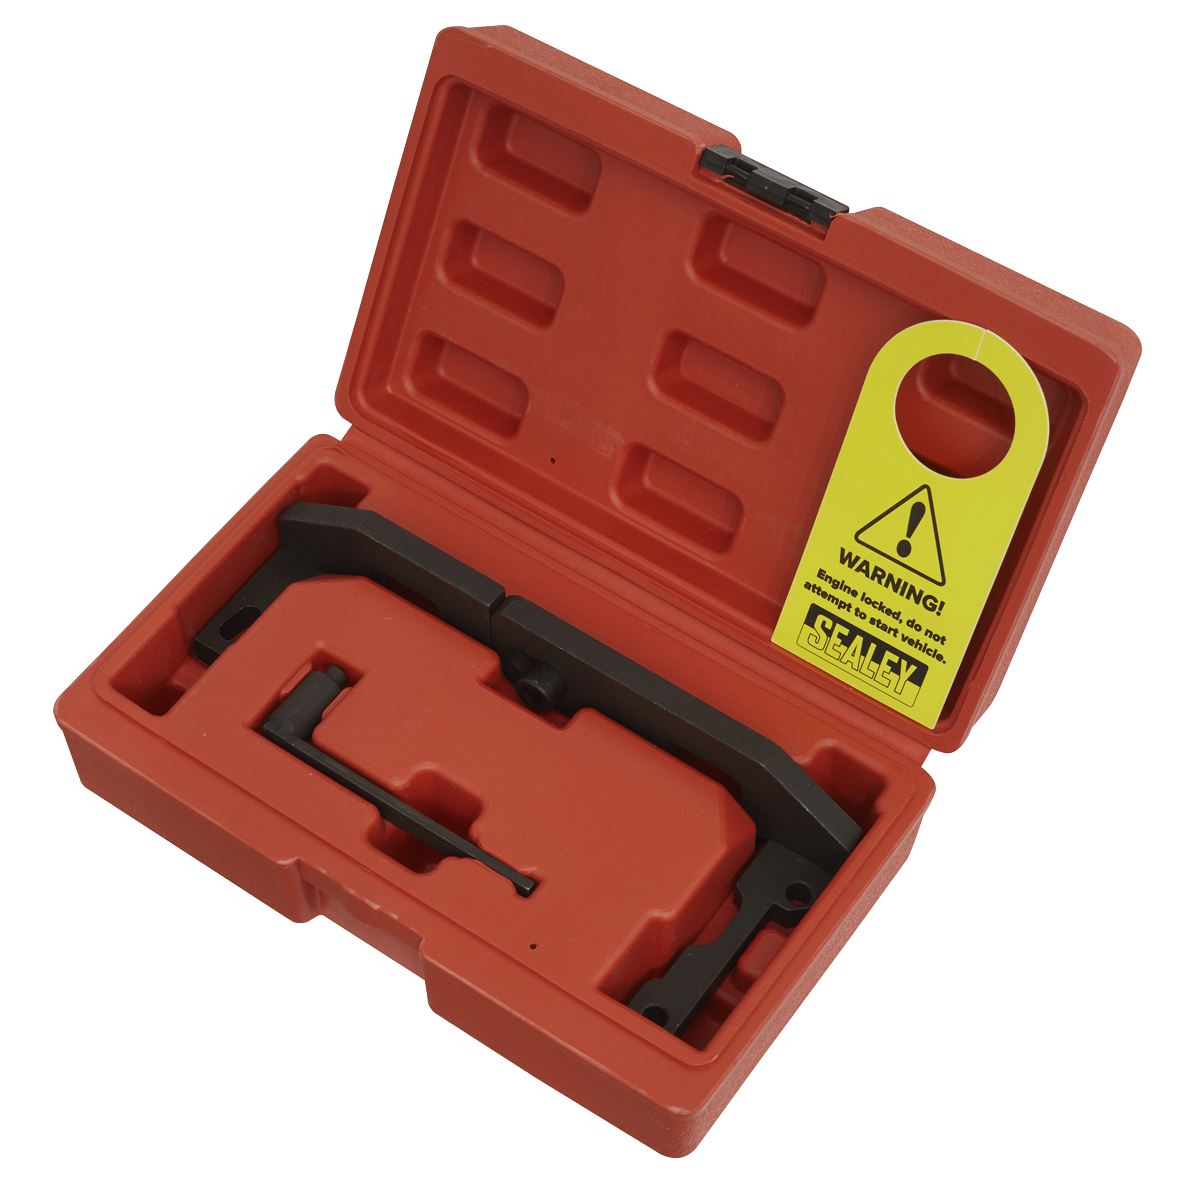 Sealey Petrol Engine Timing Tool Kit - for PSA, GM & Toyota 1.0 VTi, 1.2 VTi - Belt Drive